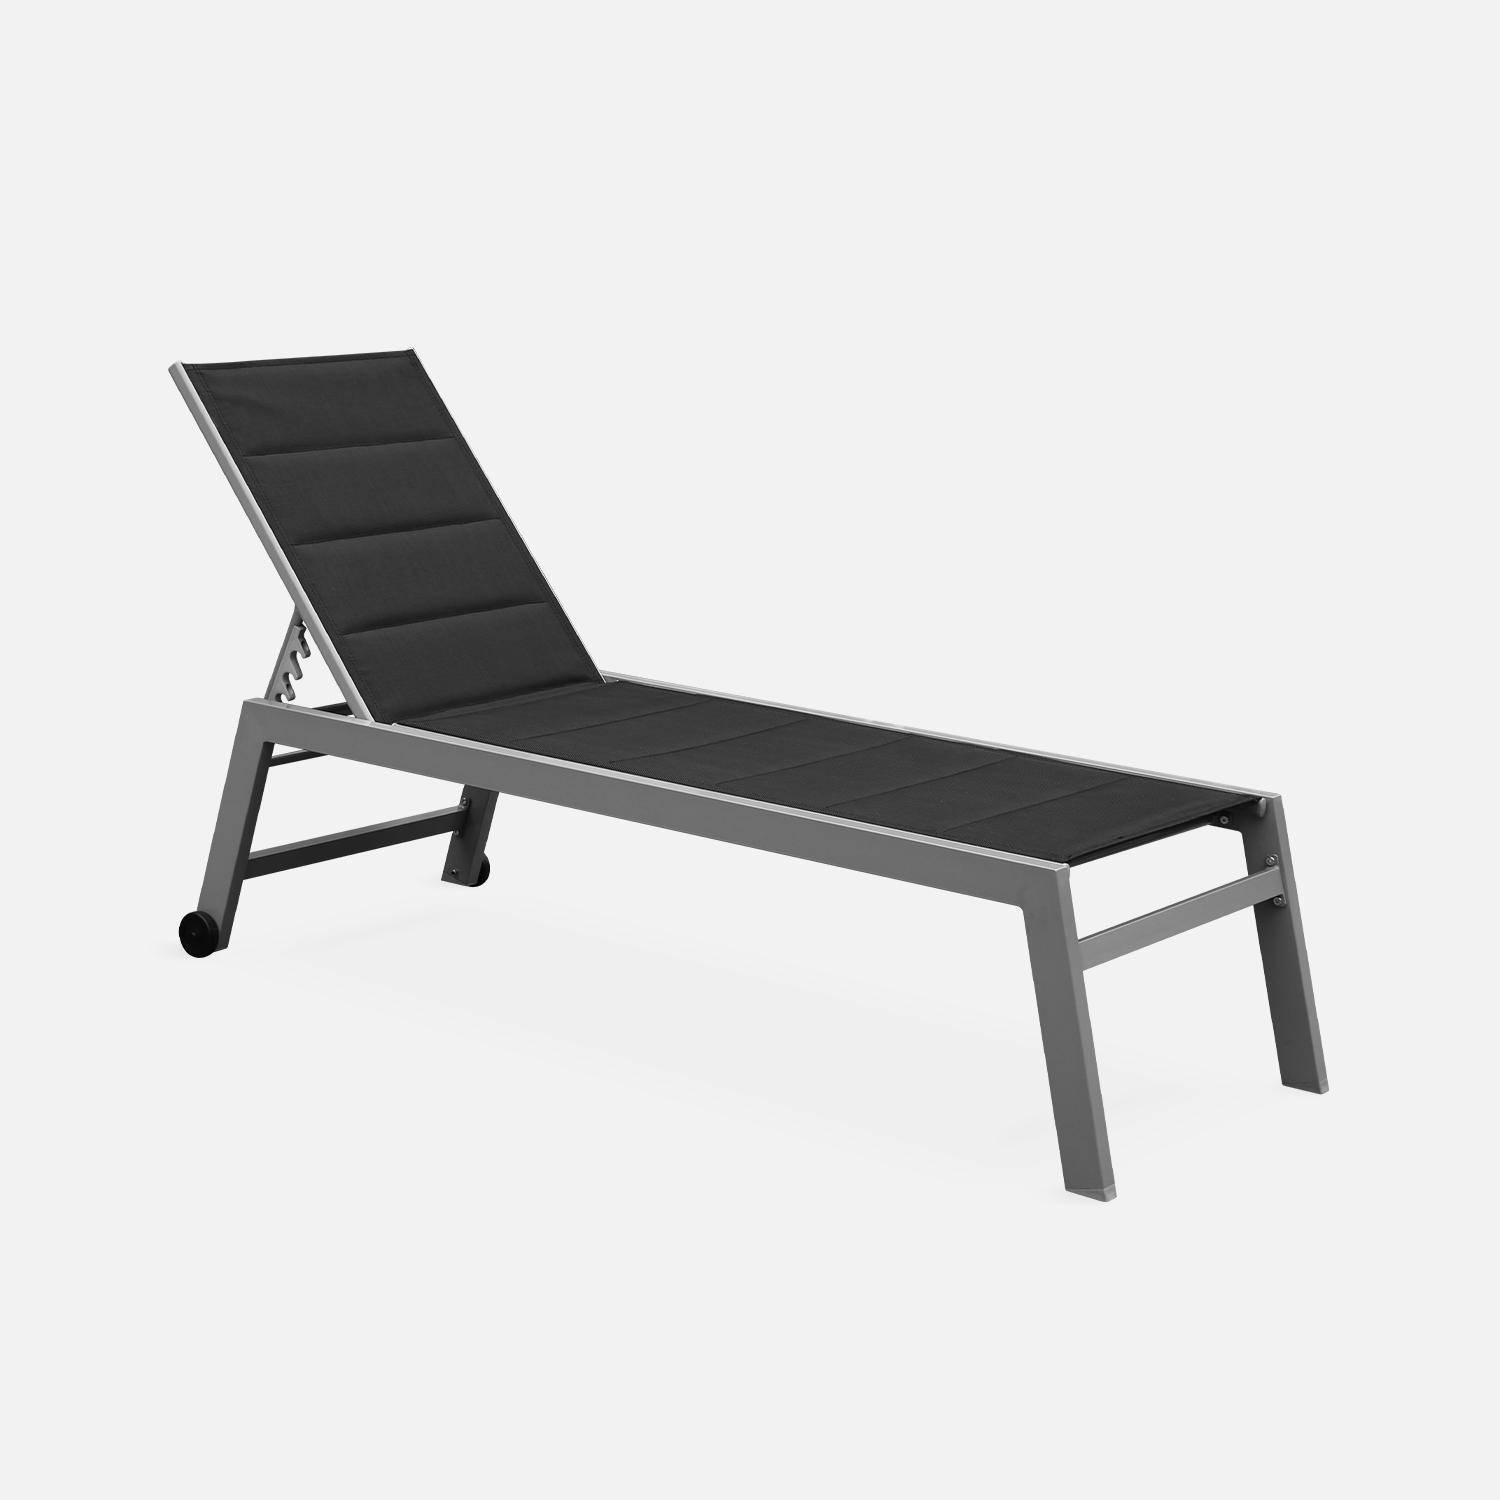 Sonnenliege - Solis - Liegestuhl aus gestepptem Textilene mit 6 Positionen aus Textilene und Aluminium, anthrazitgraues Gestell, schwarzes Textilene Photo3